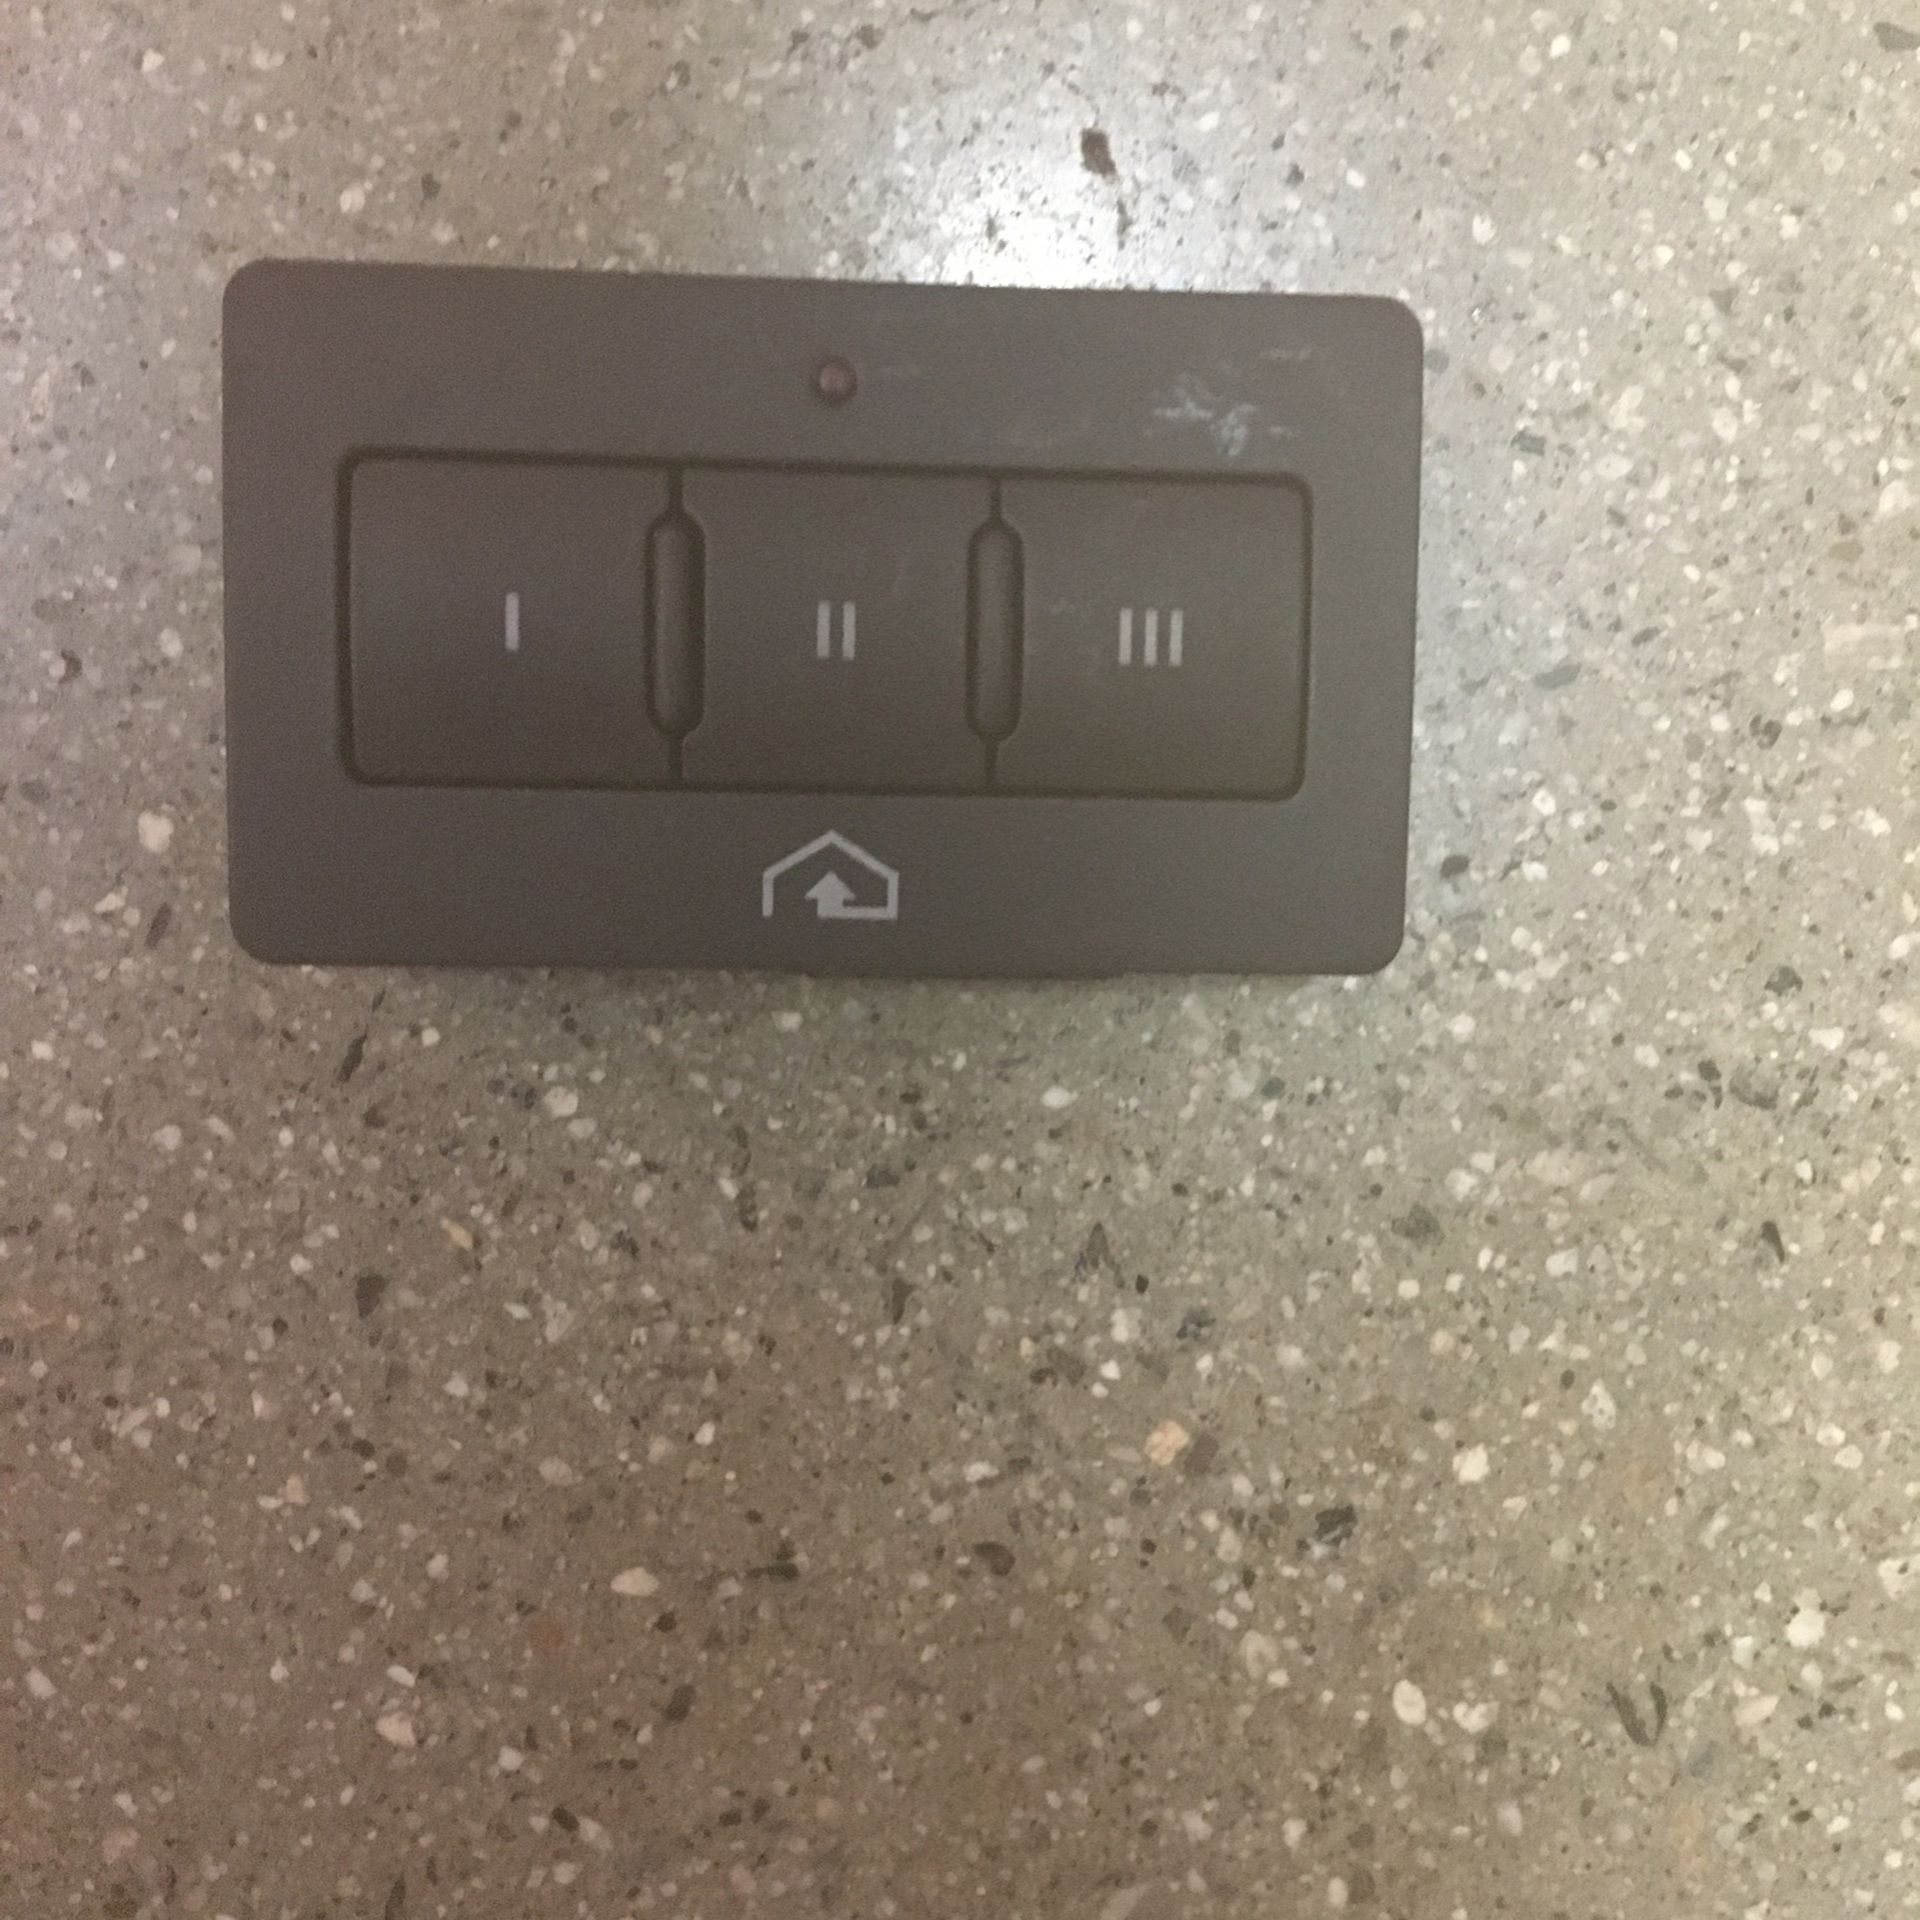 98 Audi Garage Door Switch